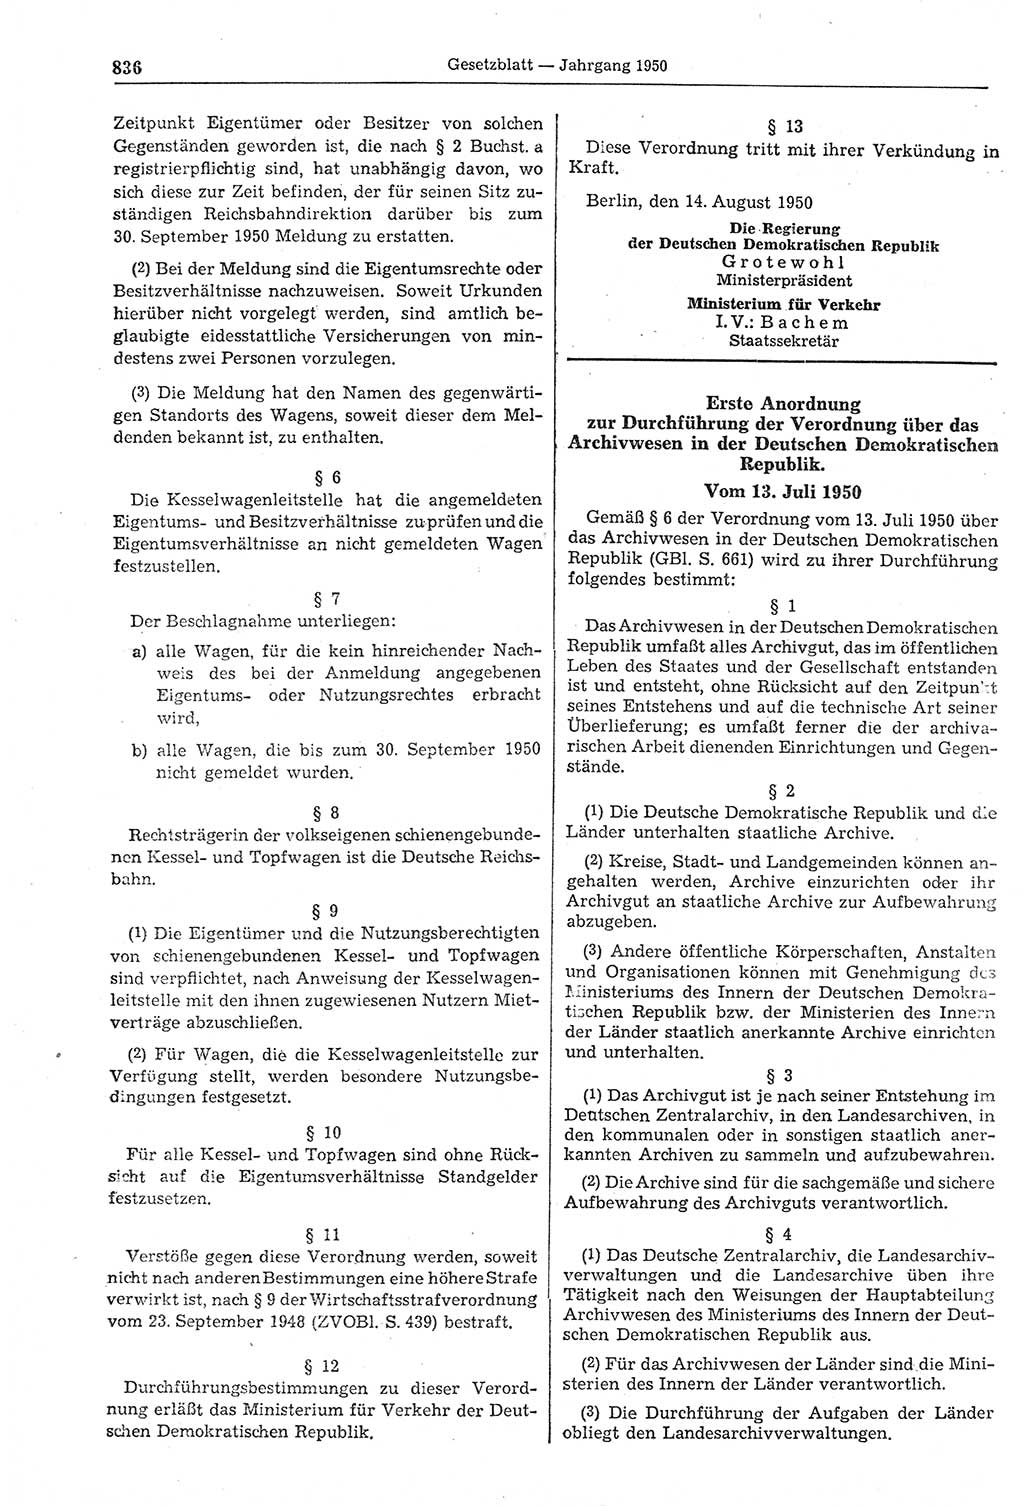 Gesetzblatt (GBl.) der Deutschen Demokratischen Republik (DDR) 1950, Seite 836 (GBl. DDR 1950, S. 836)